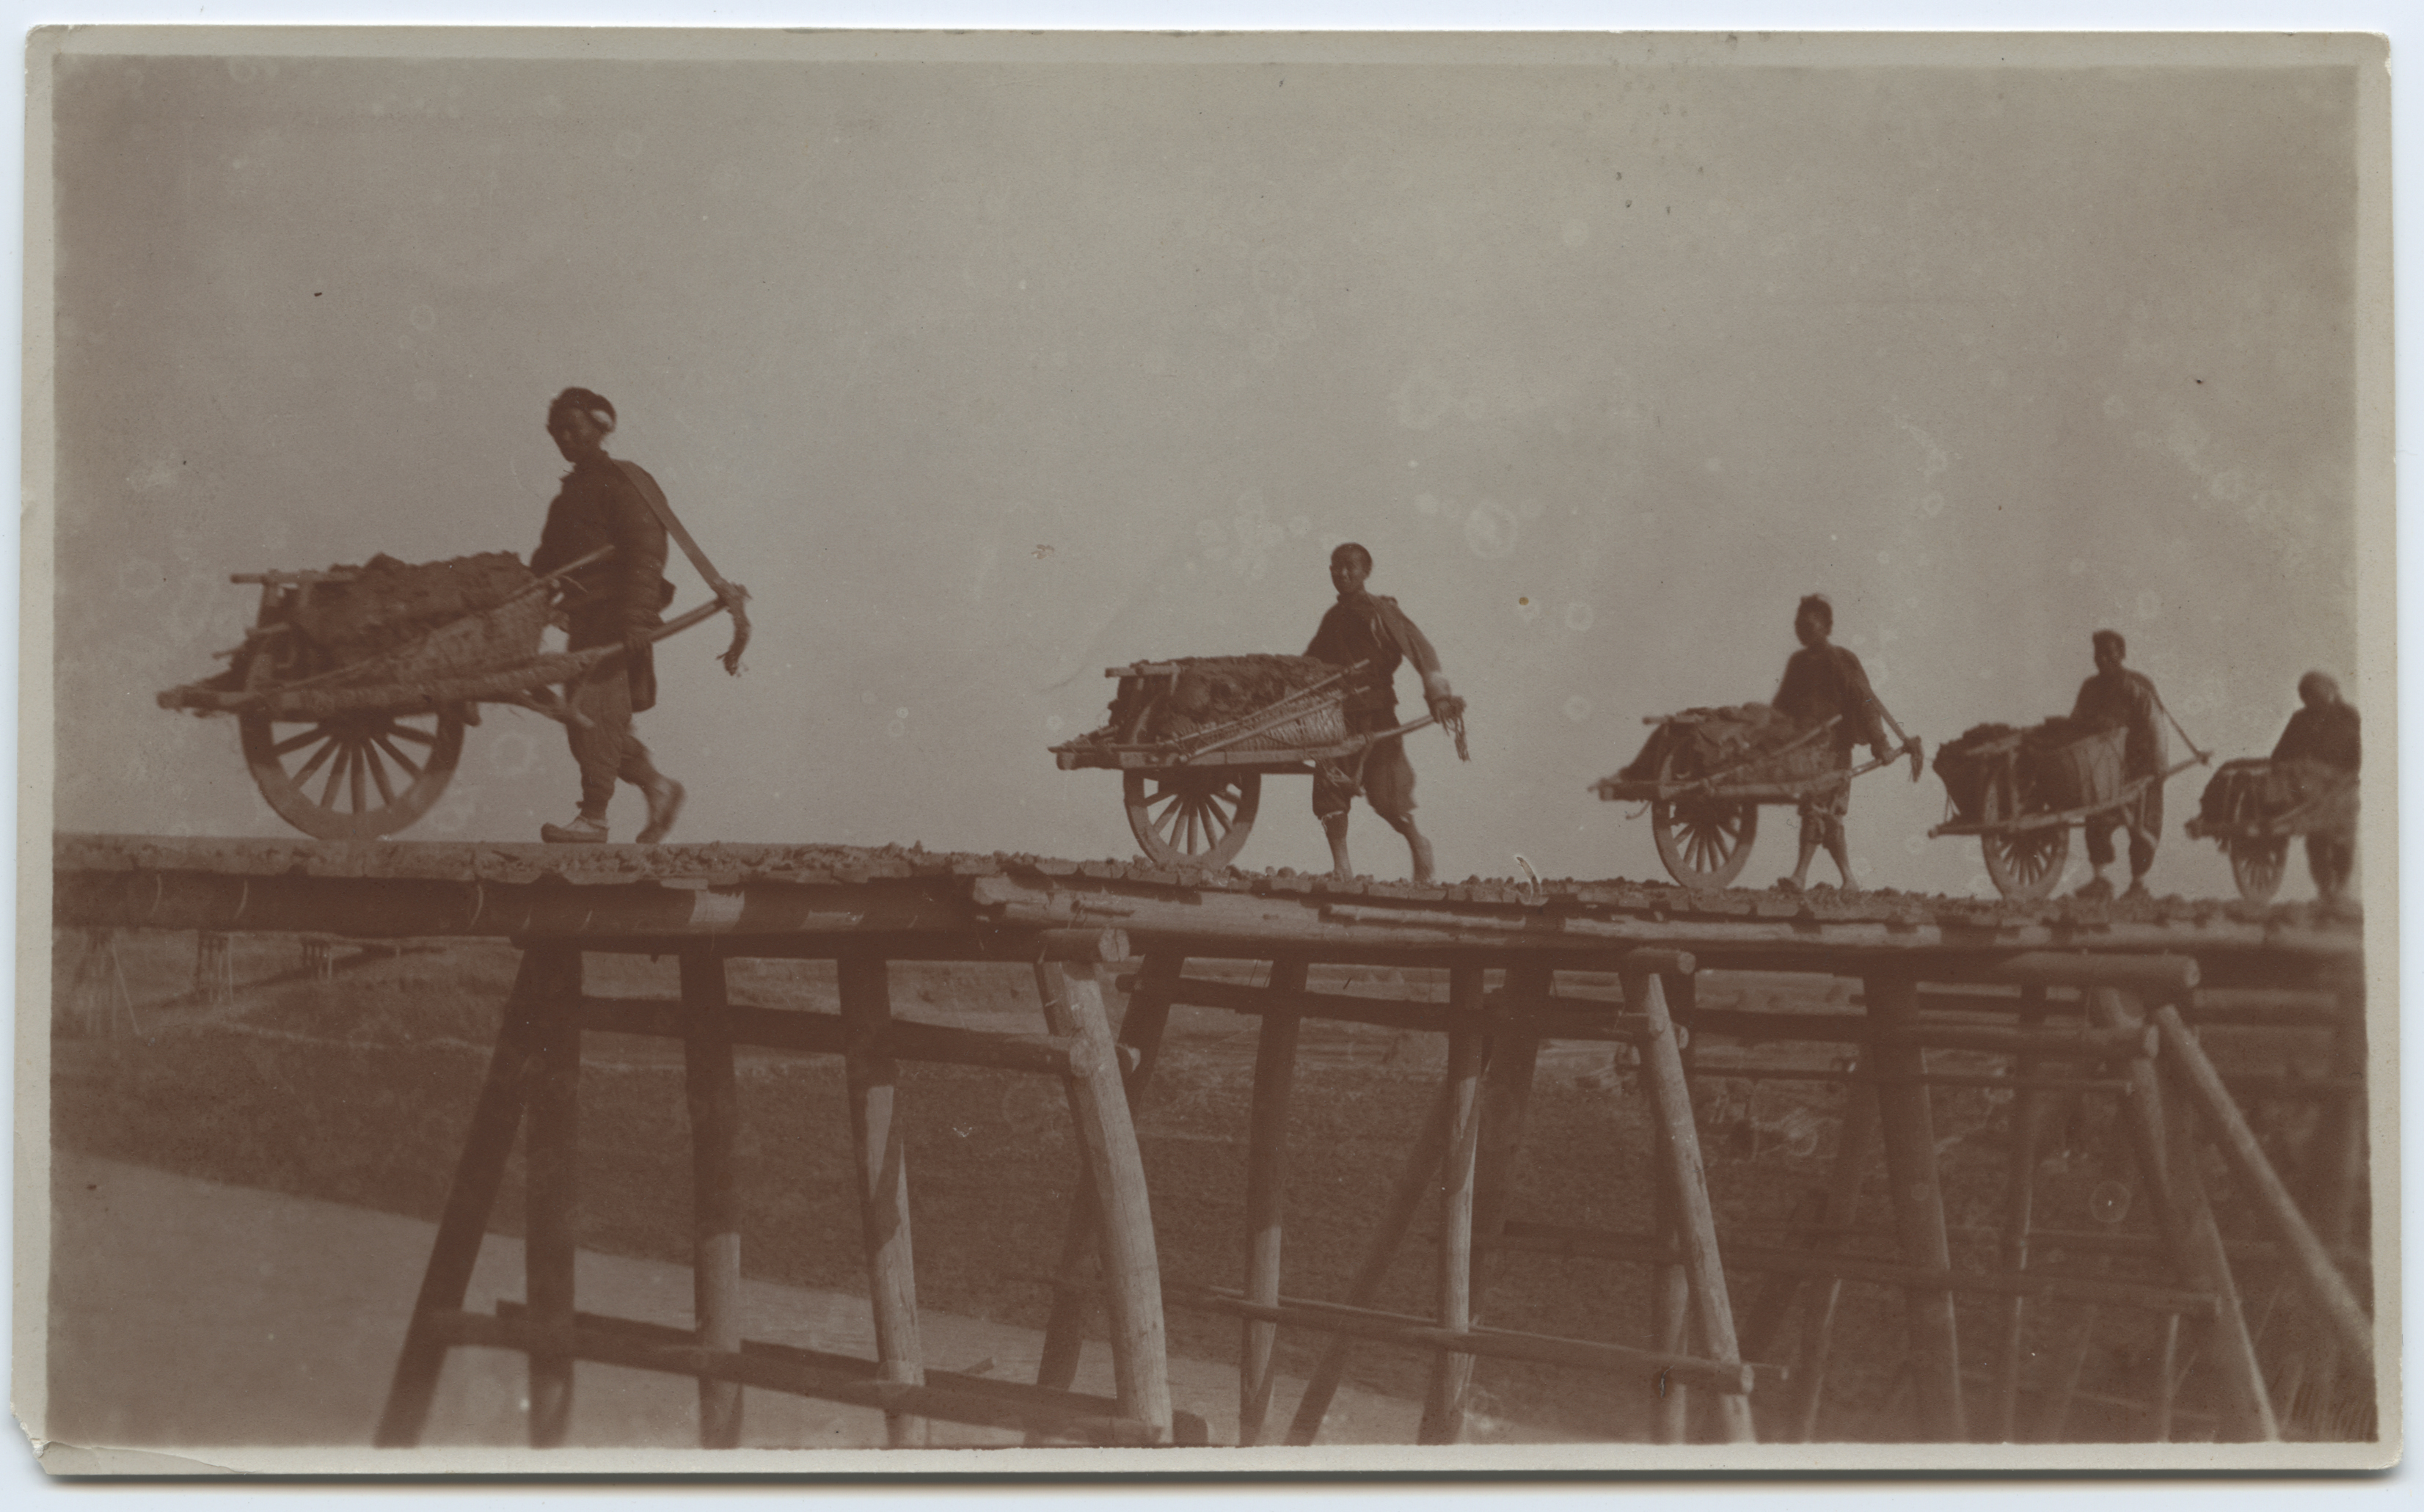 Kiinalaiset työntävät kottikärryjä puusillan yli. Kuva on otettu vuosien 1908 ja 1914 välillä. Kuva Elin Collan